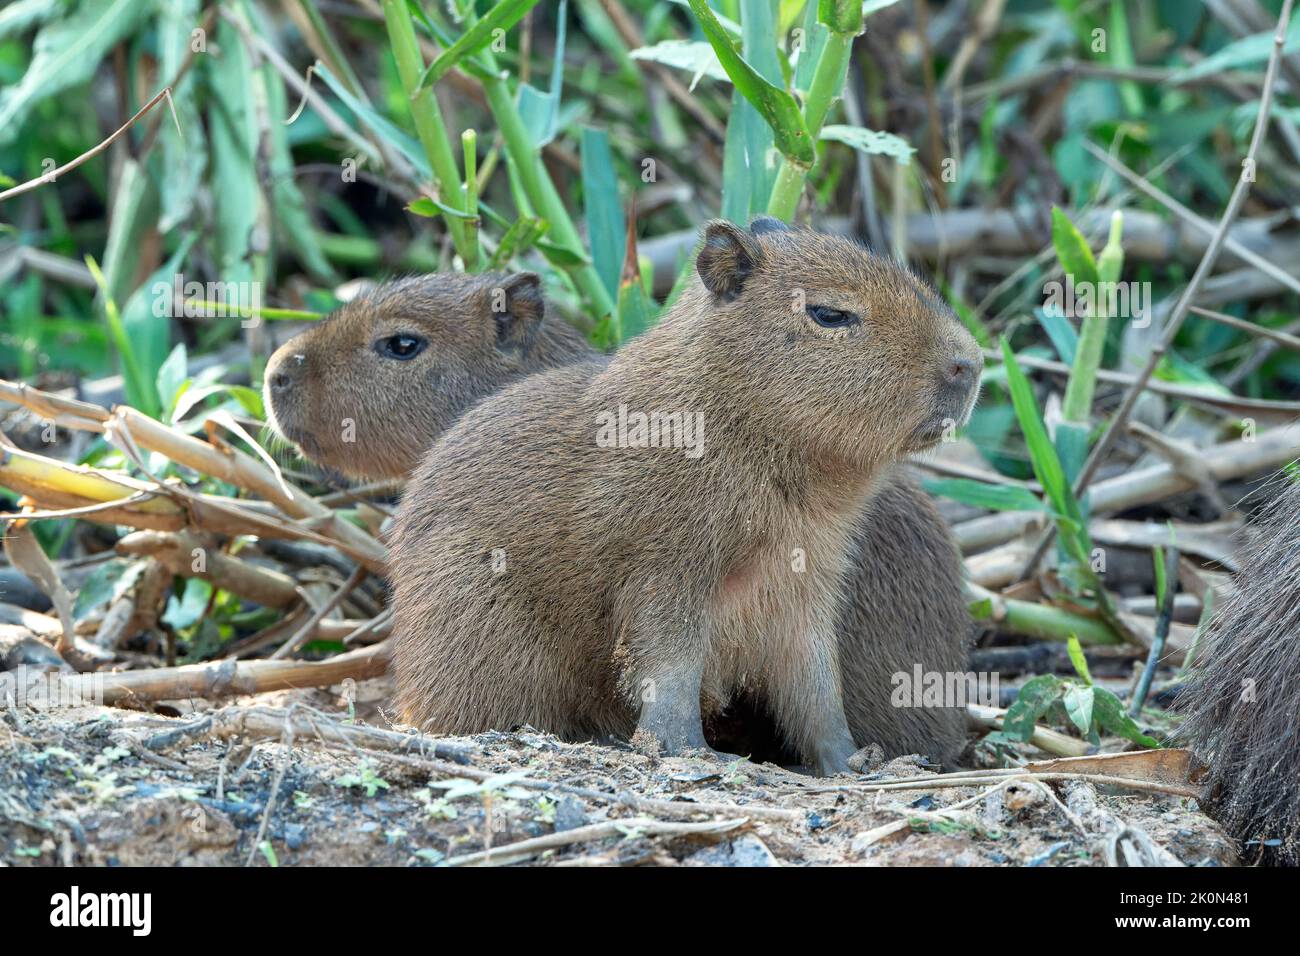 capybara, Hydrochoerus hydrochaeris, adult Pantanal, Brazil Stock Photo